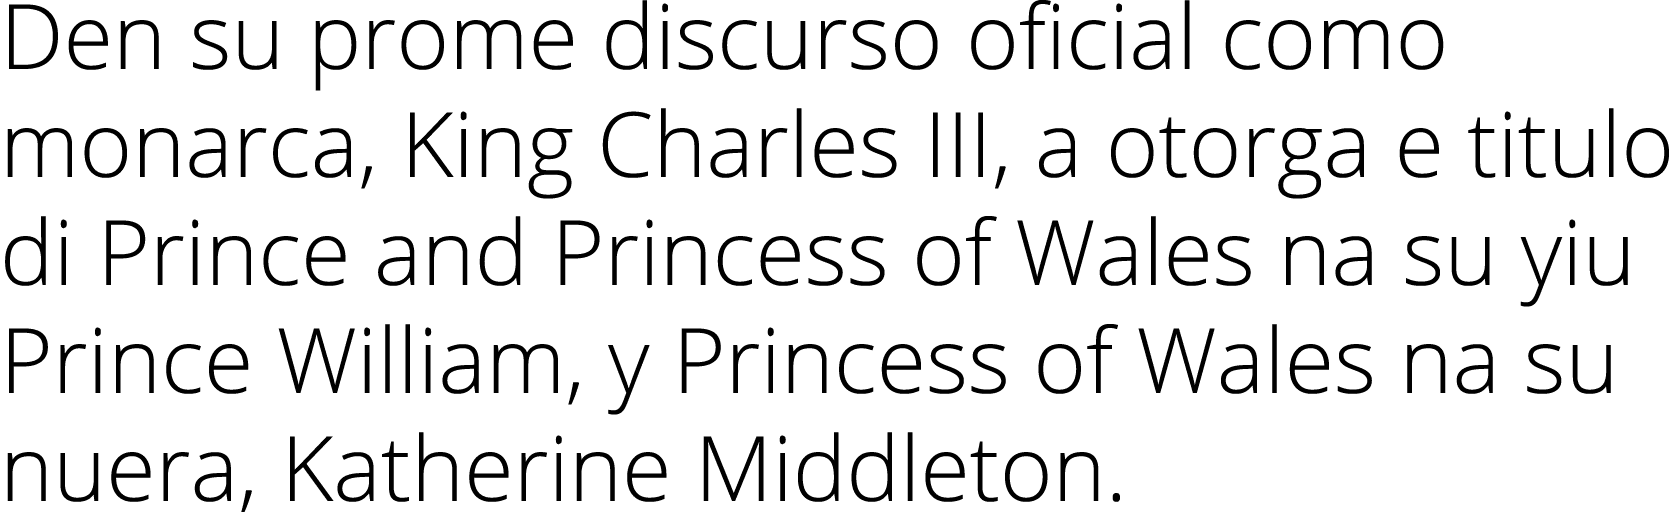 Den su prome discurso oficial como monarca, King Charles III, a otorga e titulo di Prince and Princess of Wales na su...